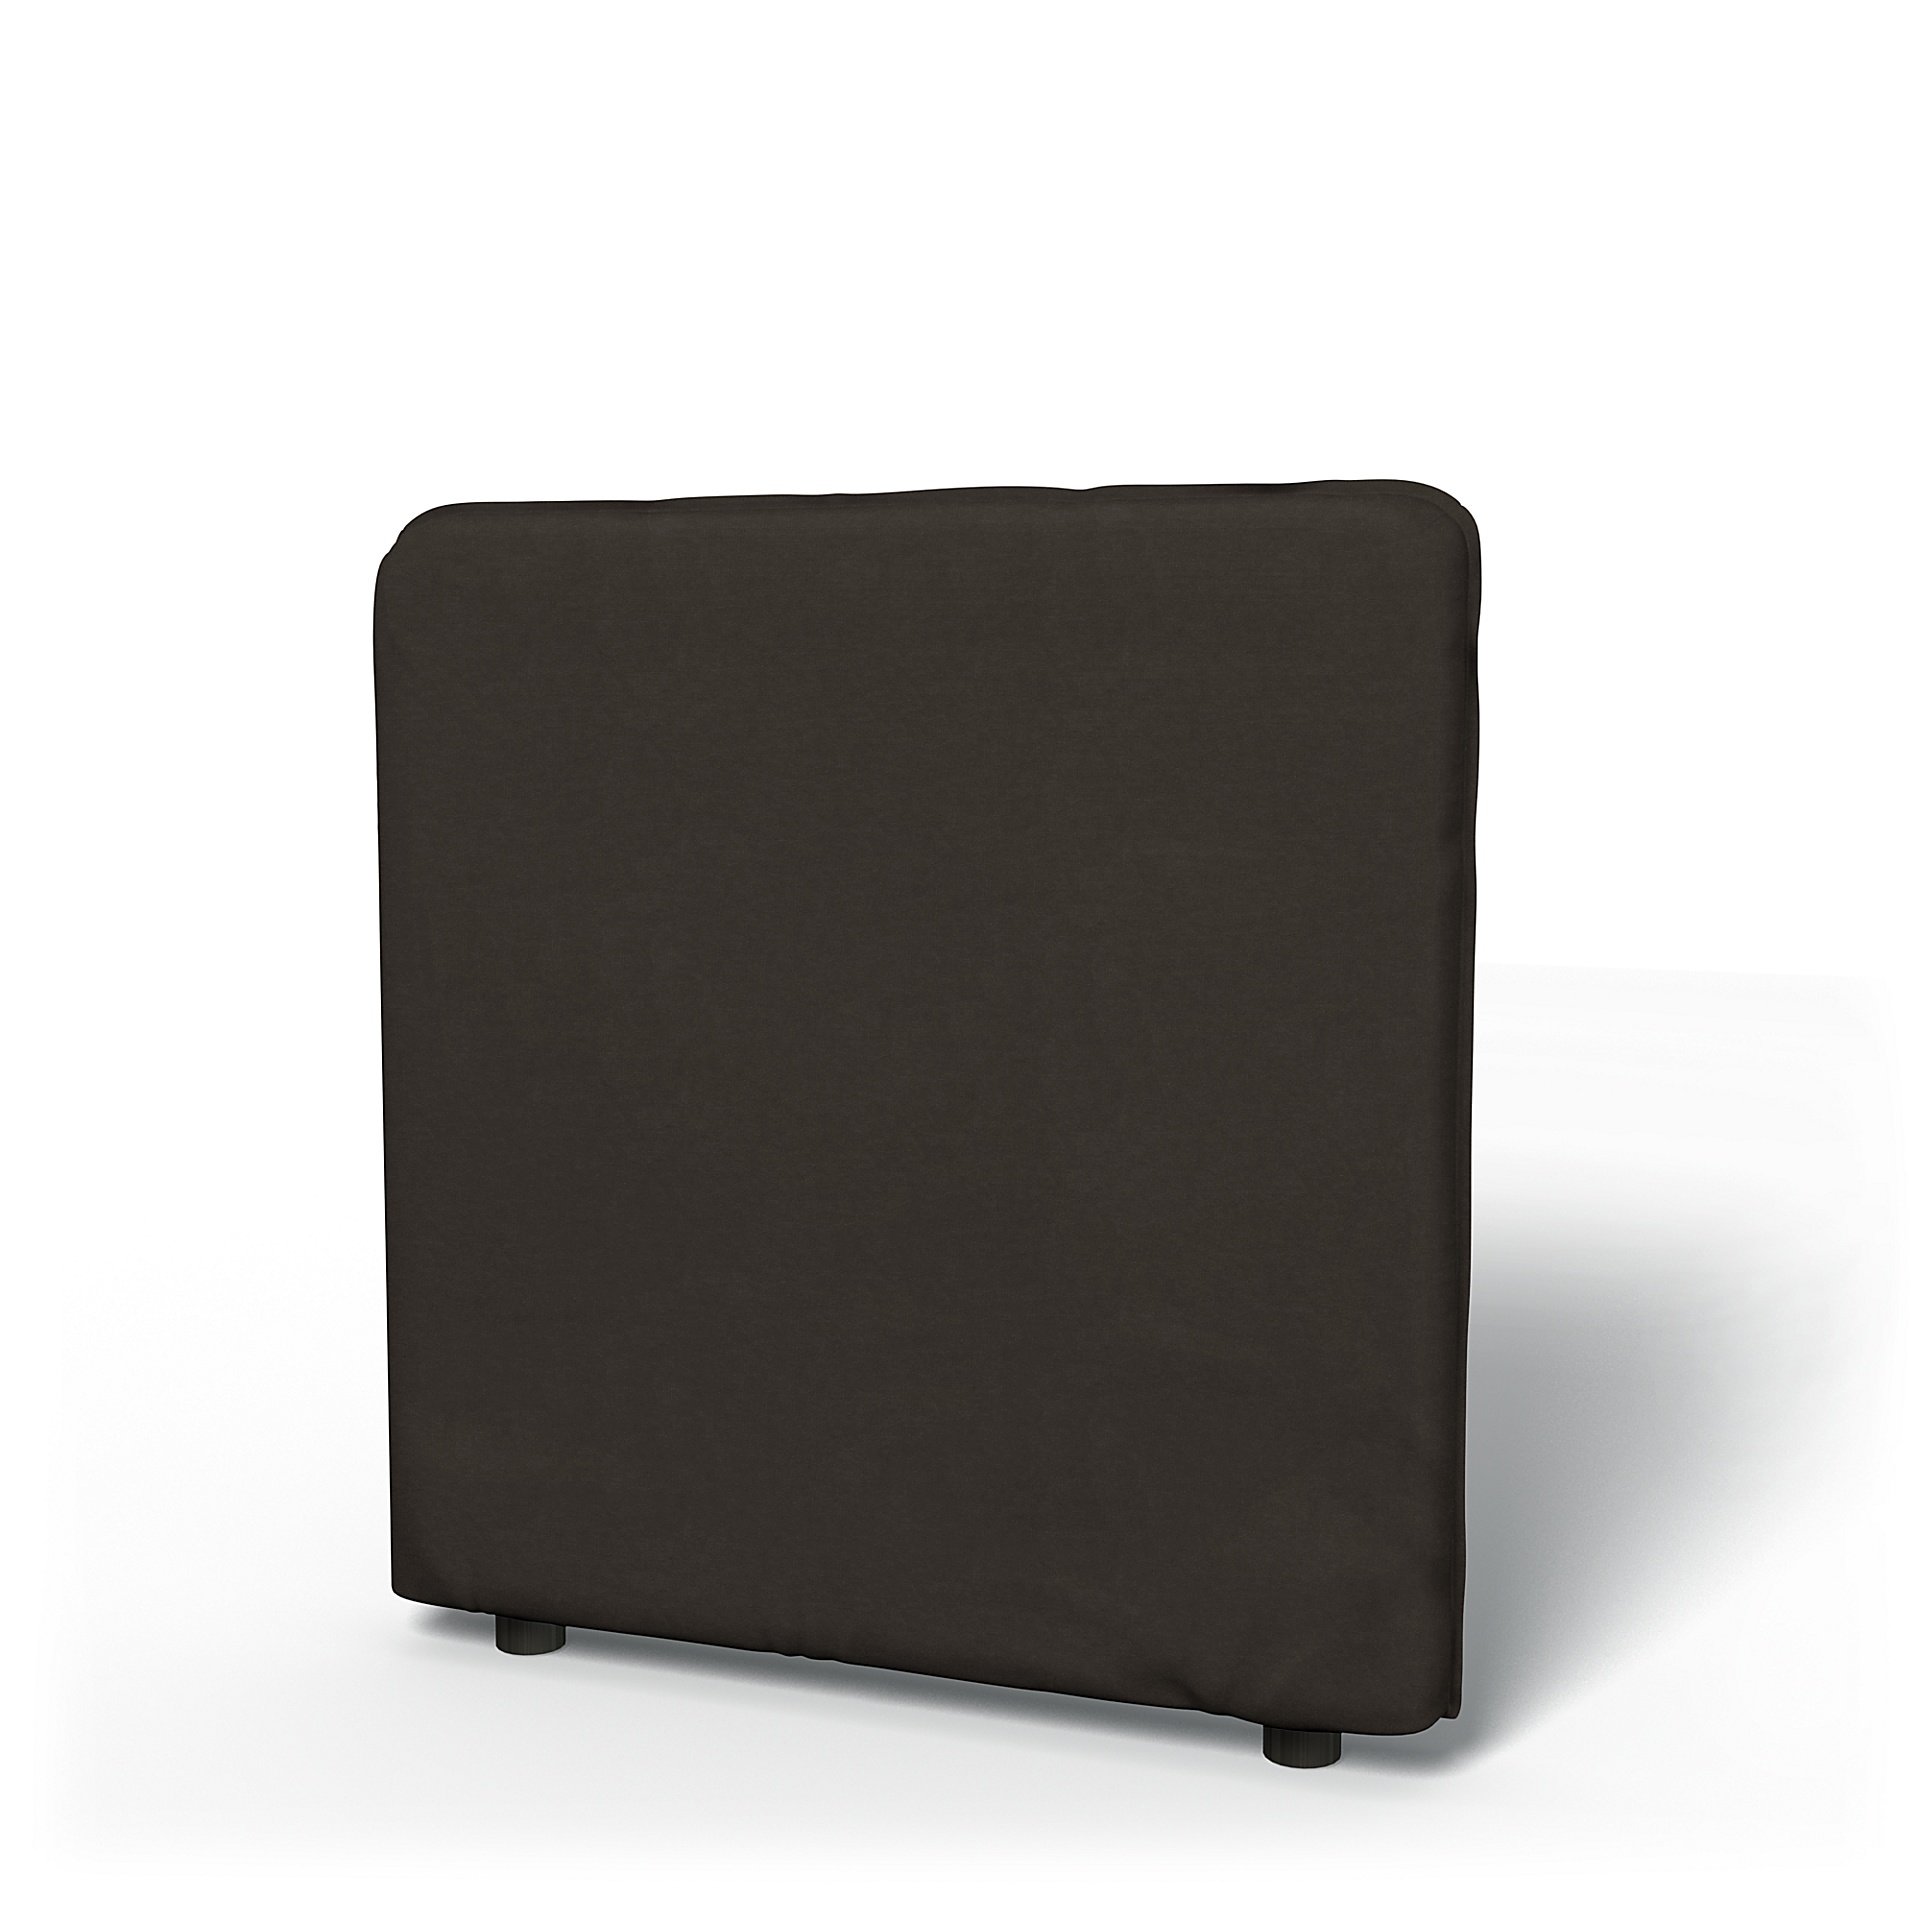 IKEA - Vallentuna Low Backrest Cover 80x80cm 32x32in, Licorice, Velvet - Bemz